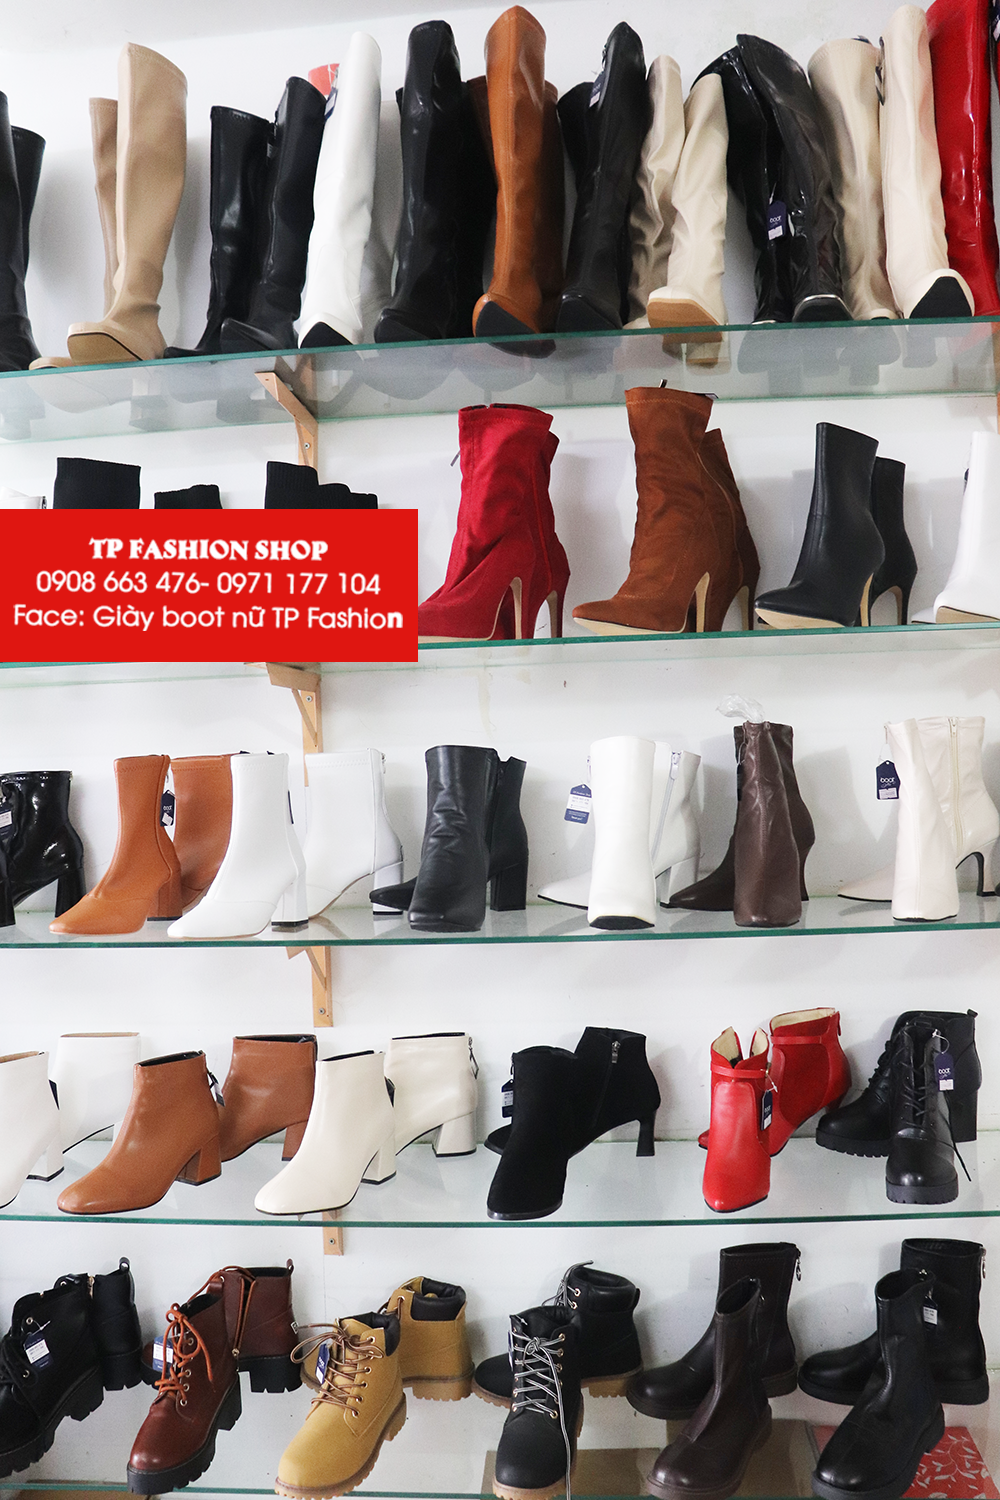 Giày boot nữ TP Fashion ưu đãi khủng 20/10, mua 1 tặng 1 cho tất cả sản phẩm